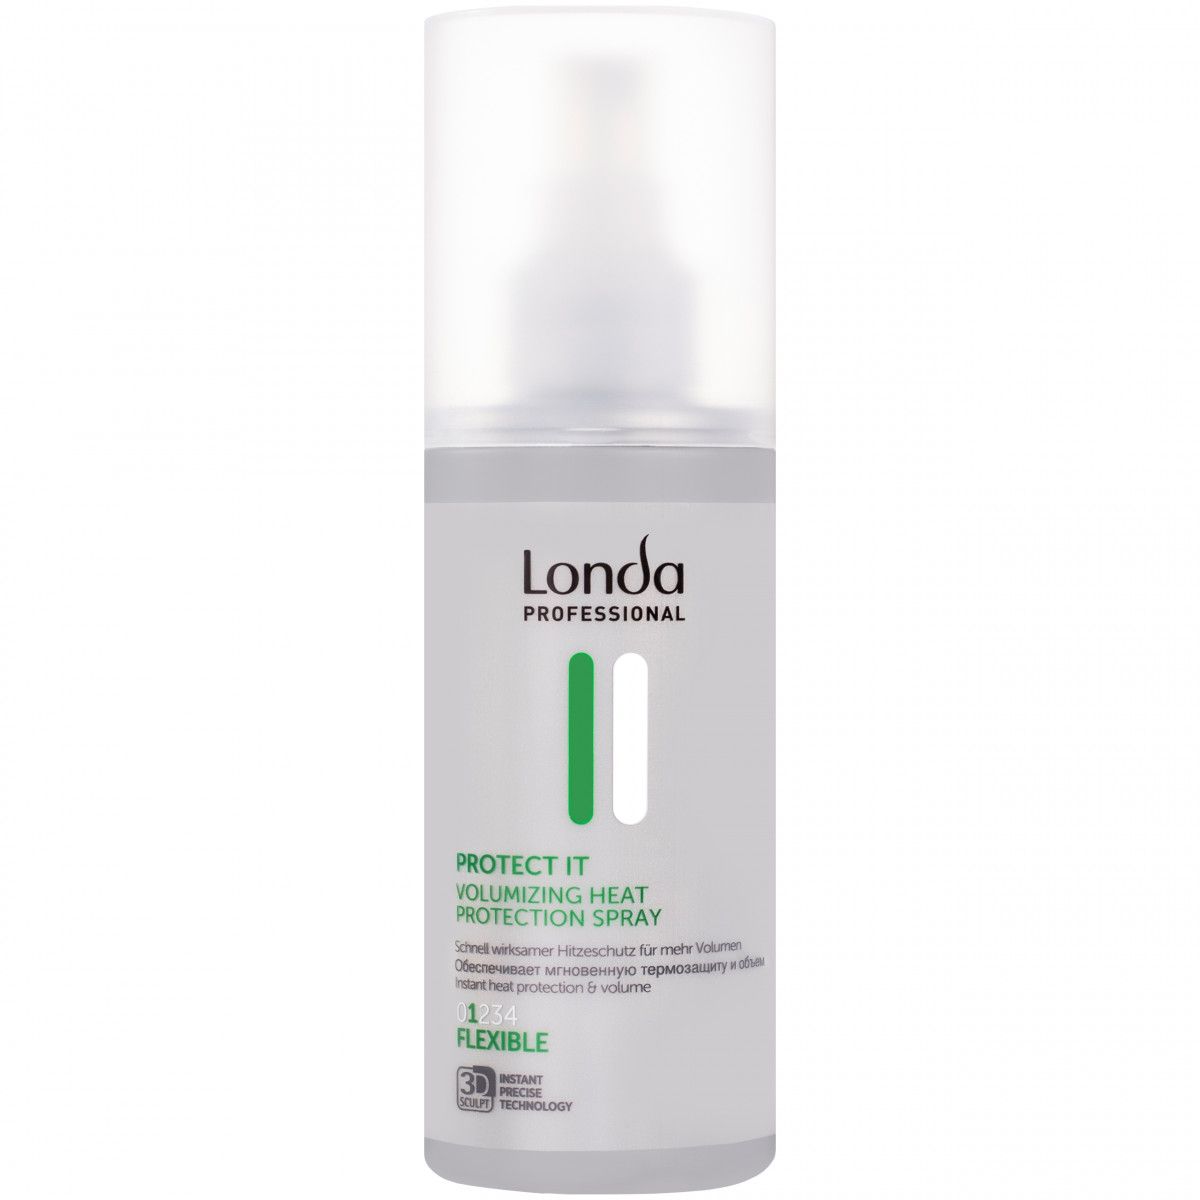 Londa Protect It Volumizing Heat Protection Spray – termoochronny spray do włosów dodający objętości, 150 ml